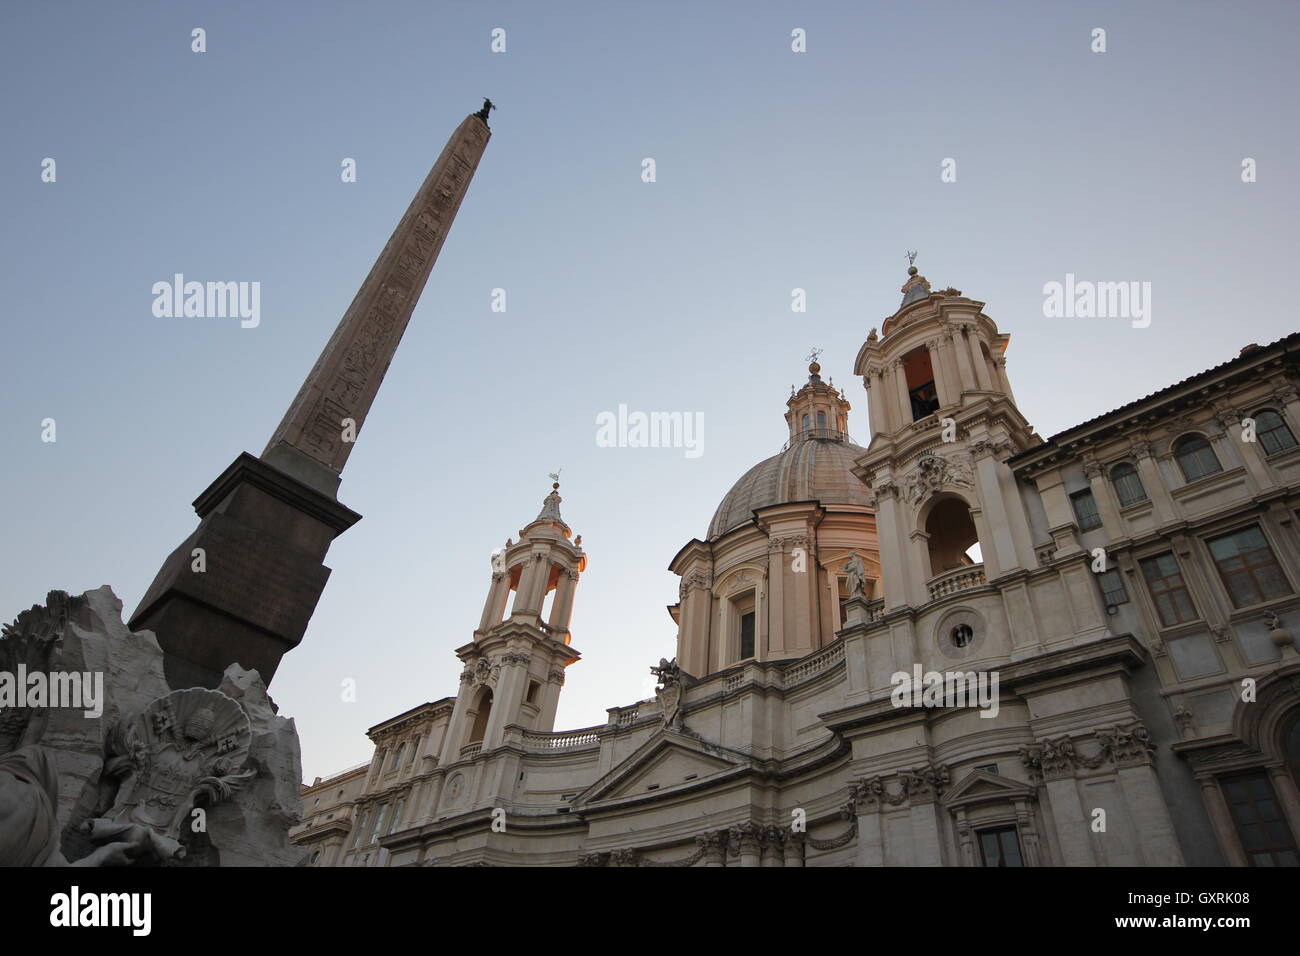 L'obélisque de la Fontana dei Quattro Fiumi avec l'église de Sant'Agnese in Agone, Piazza Navona, Rome, Italie Banque D'Images